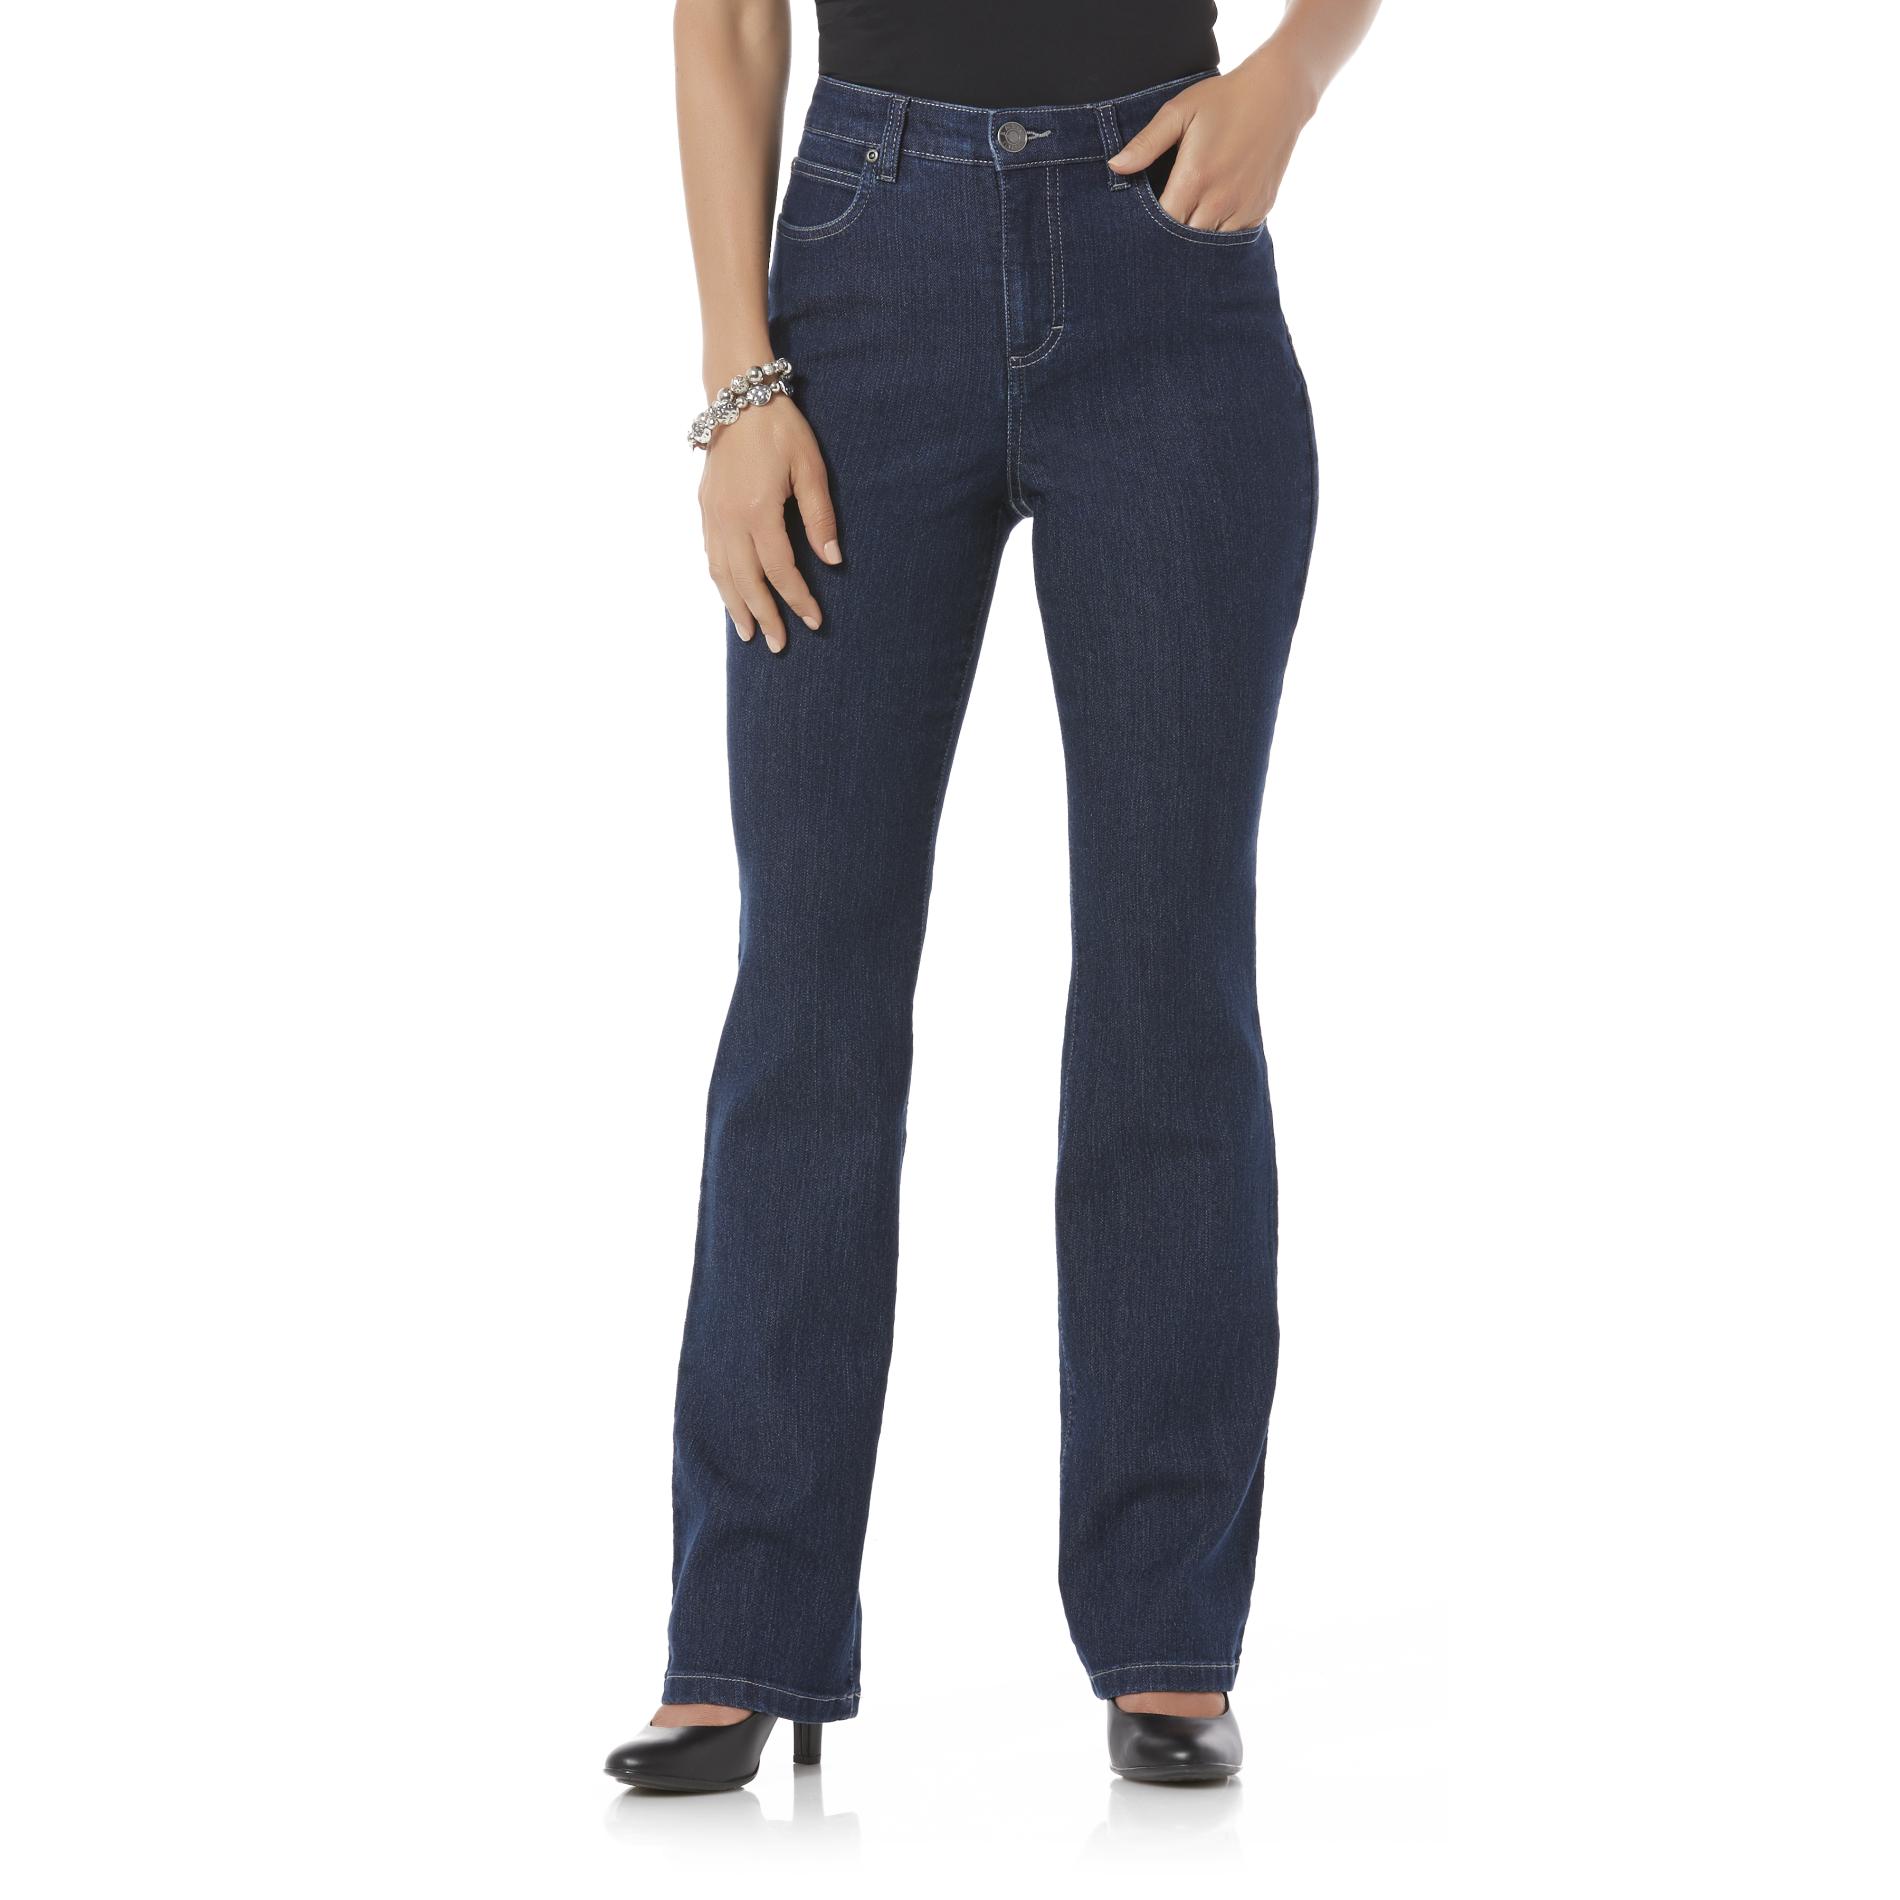 Women's Jeans - Kmart